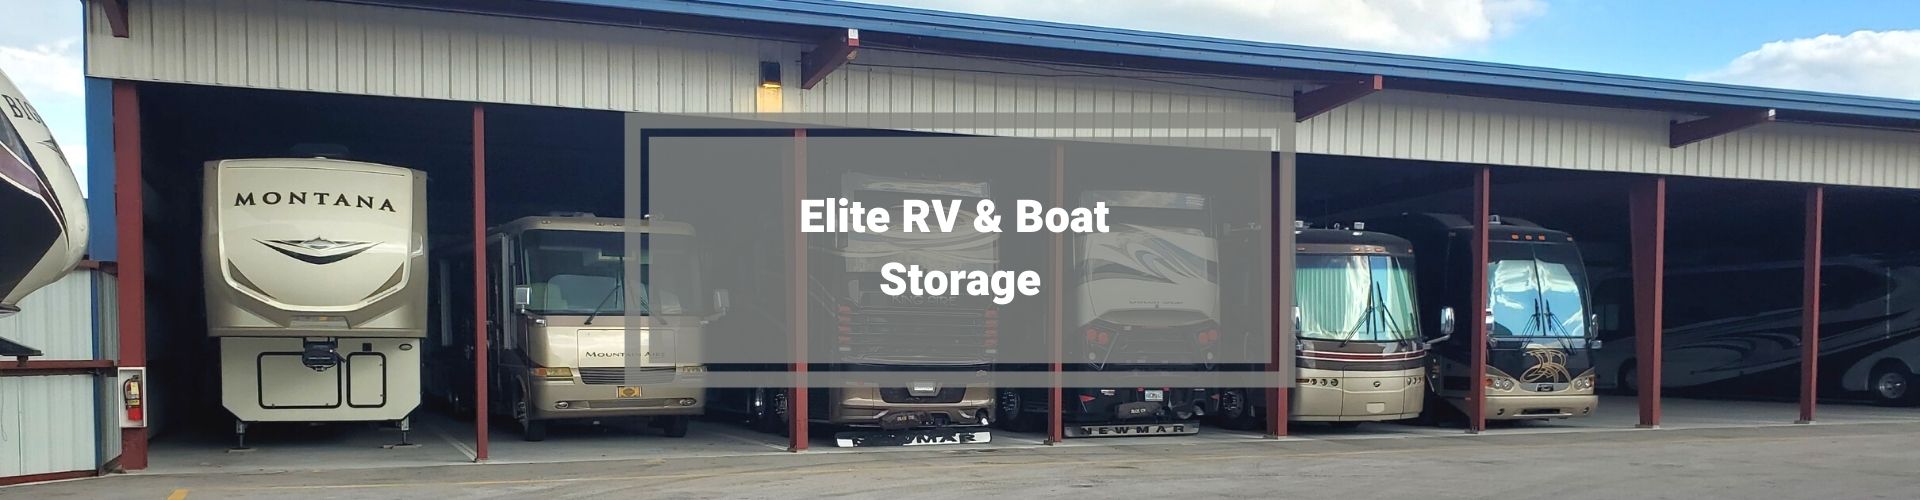 RV boat storage Fort Myers FL